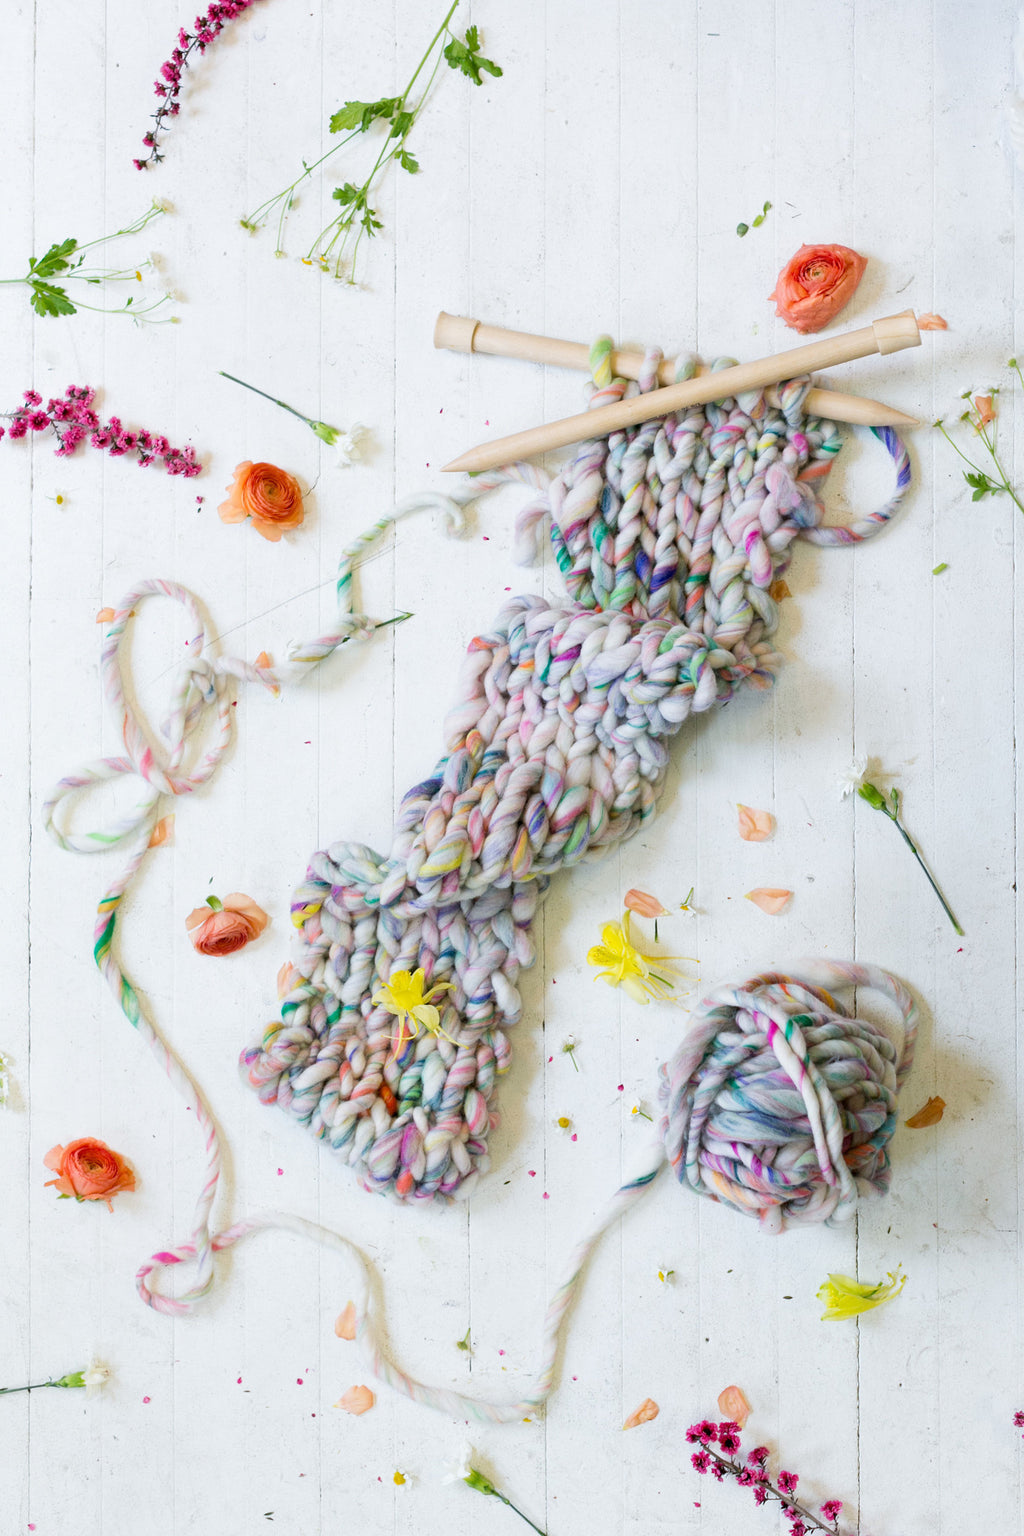 Wanderlust in Frolic ~ knit in a simple scarf